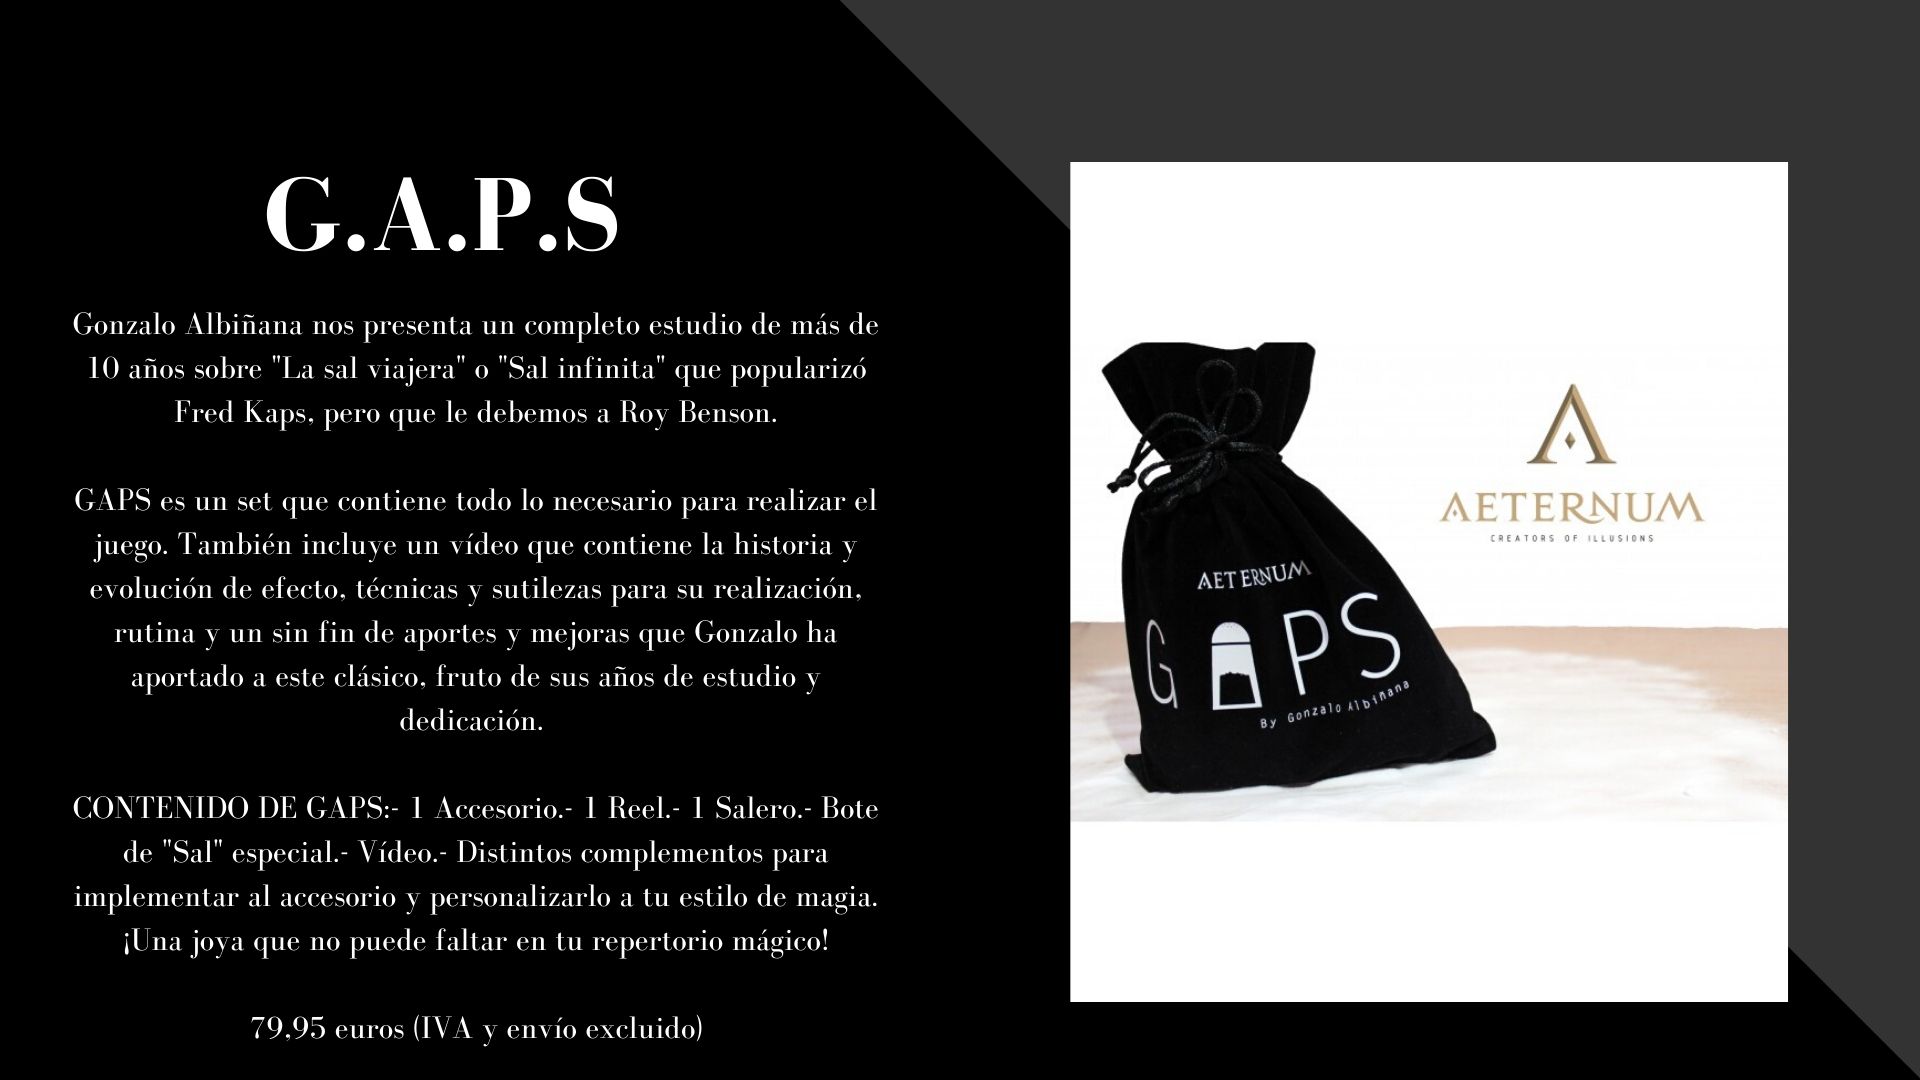 G.A.P.S. de Gonzalo Albiñana y Aeternum